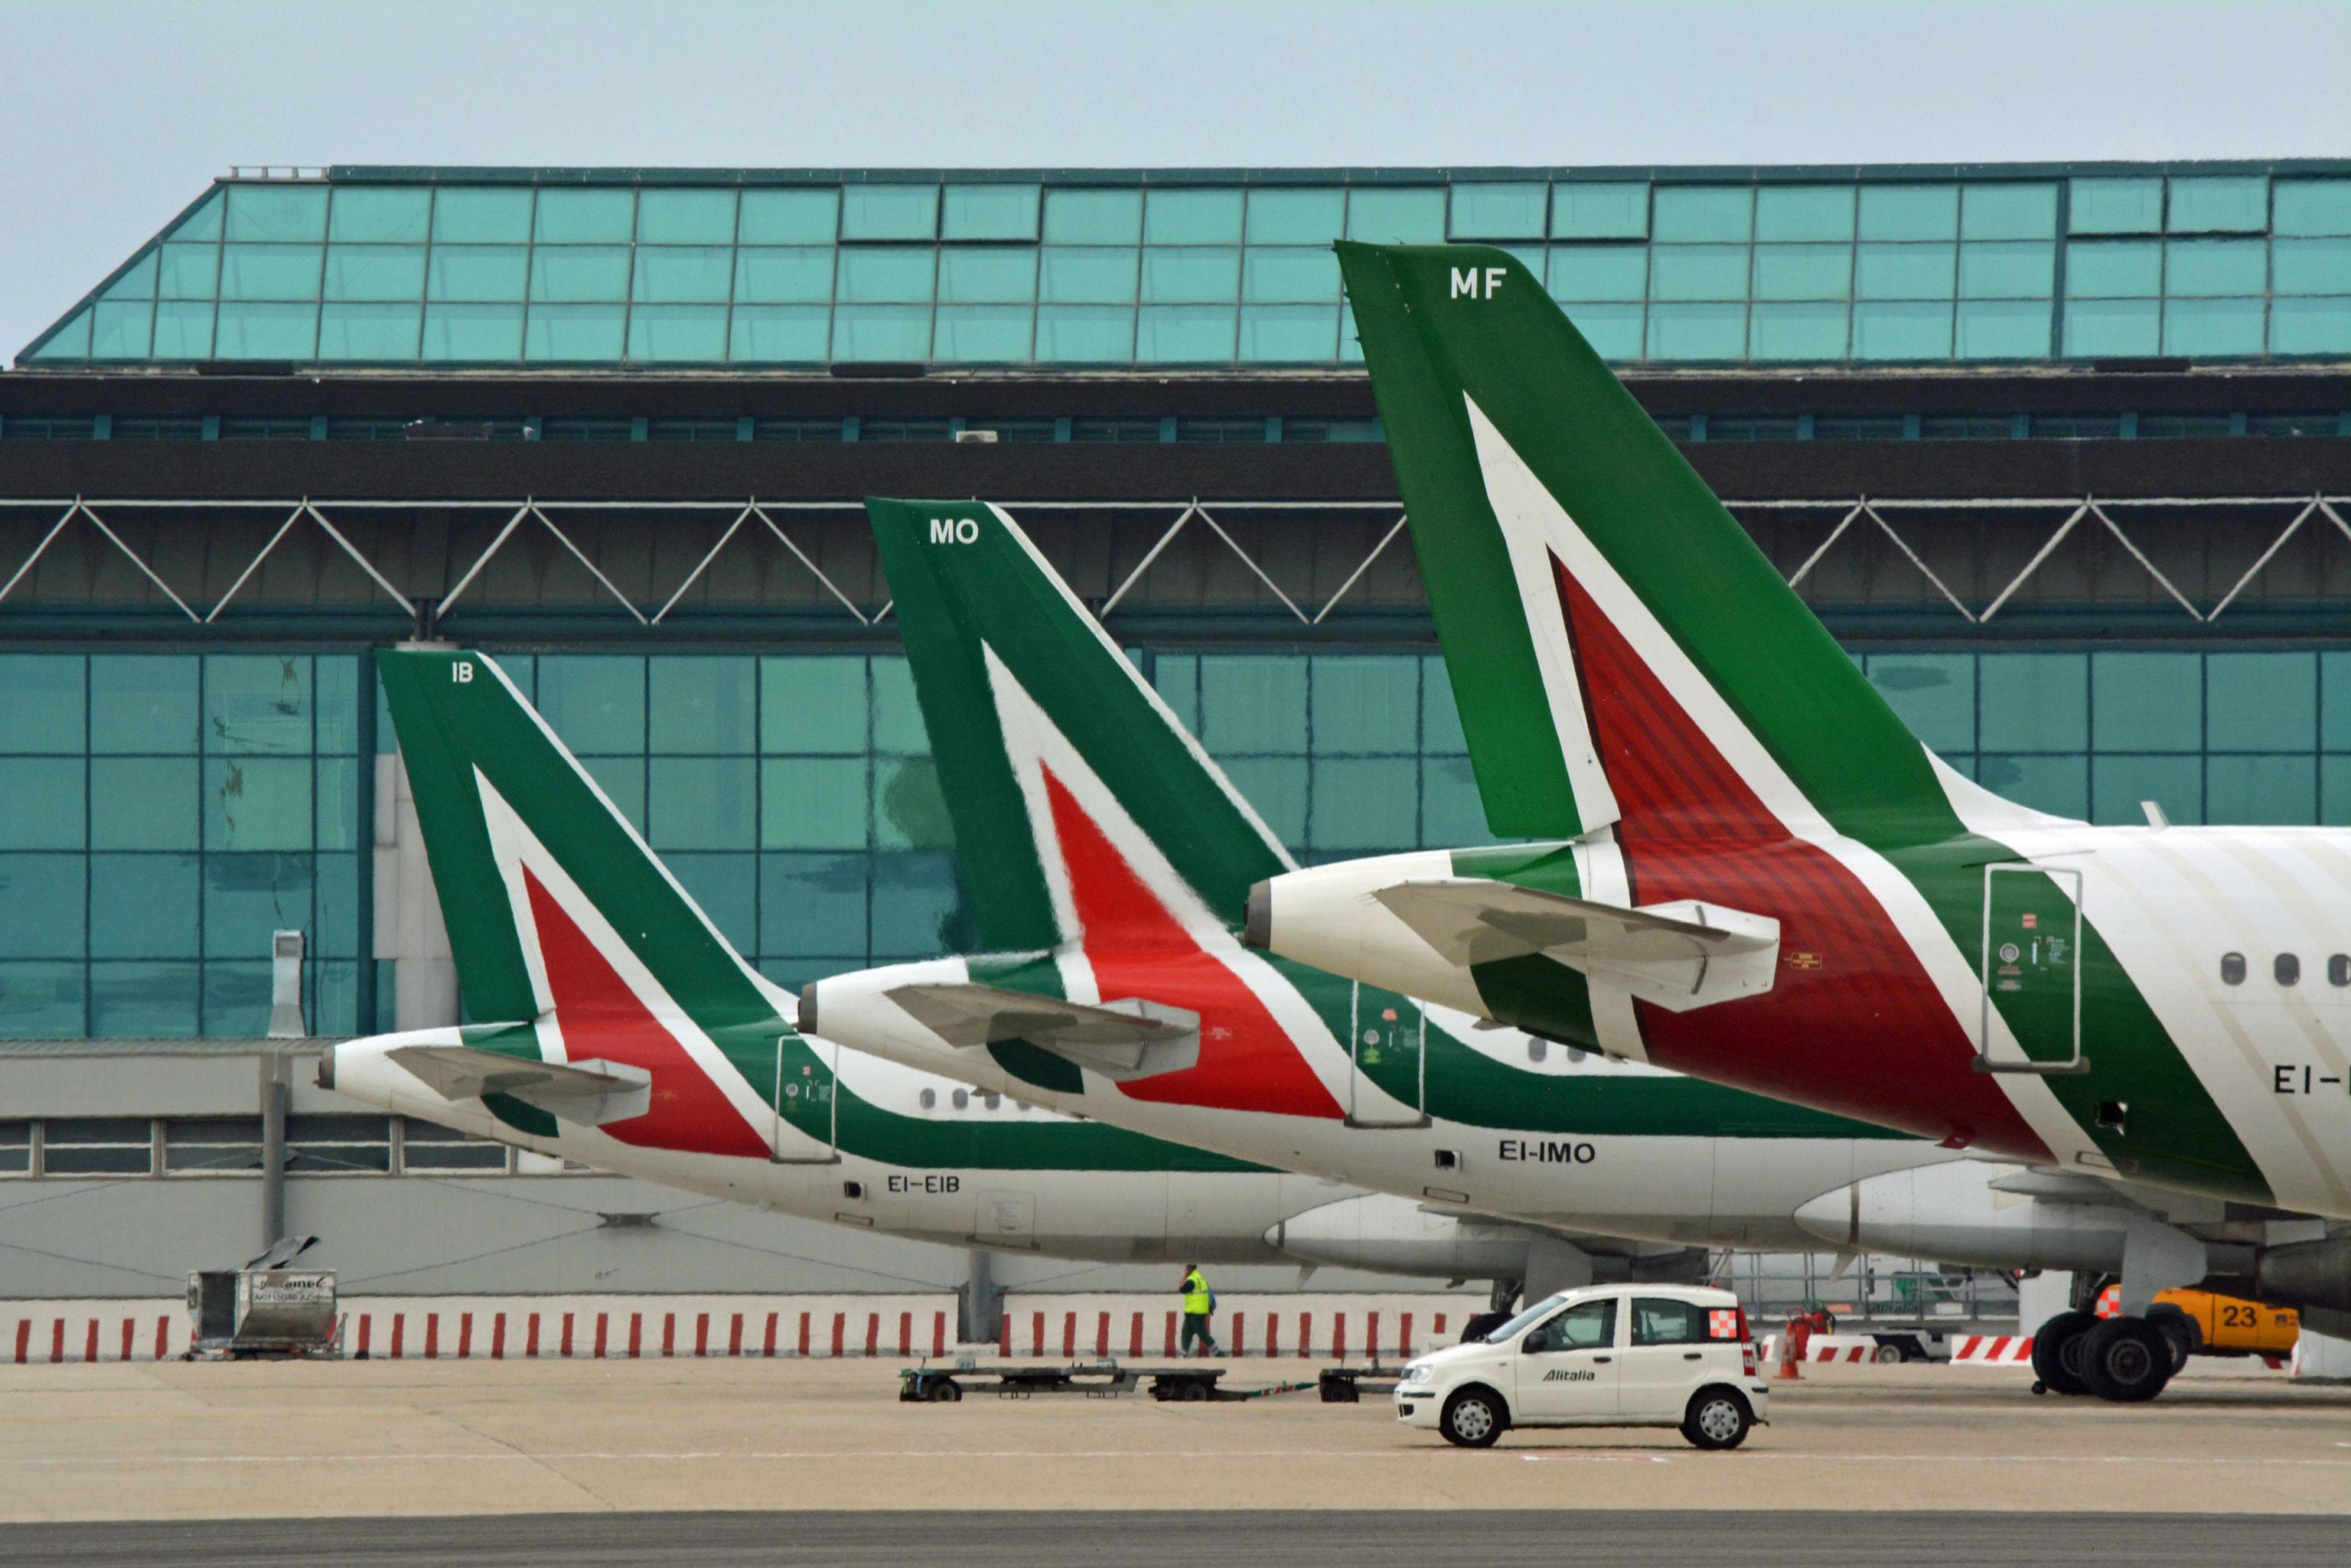 Τζεντιλόνι: Δεν υπάρχουν οι προϋποθέσεις για εθνικοποίηση της Alitalia